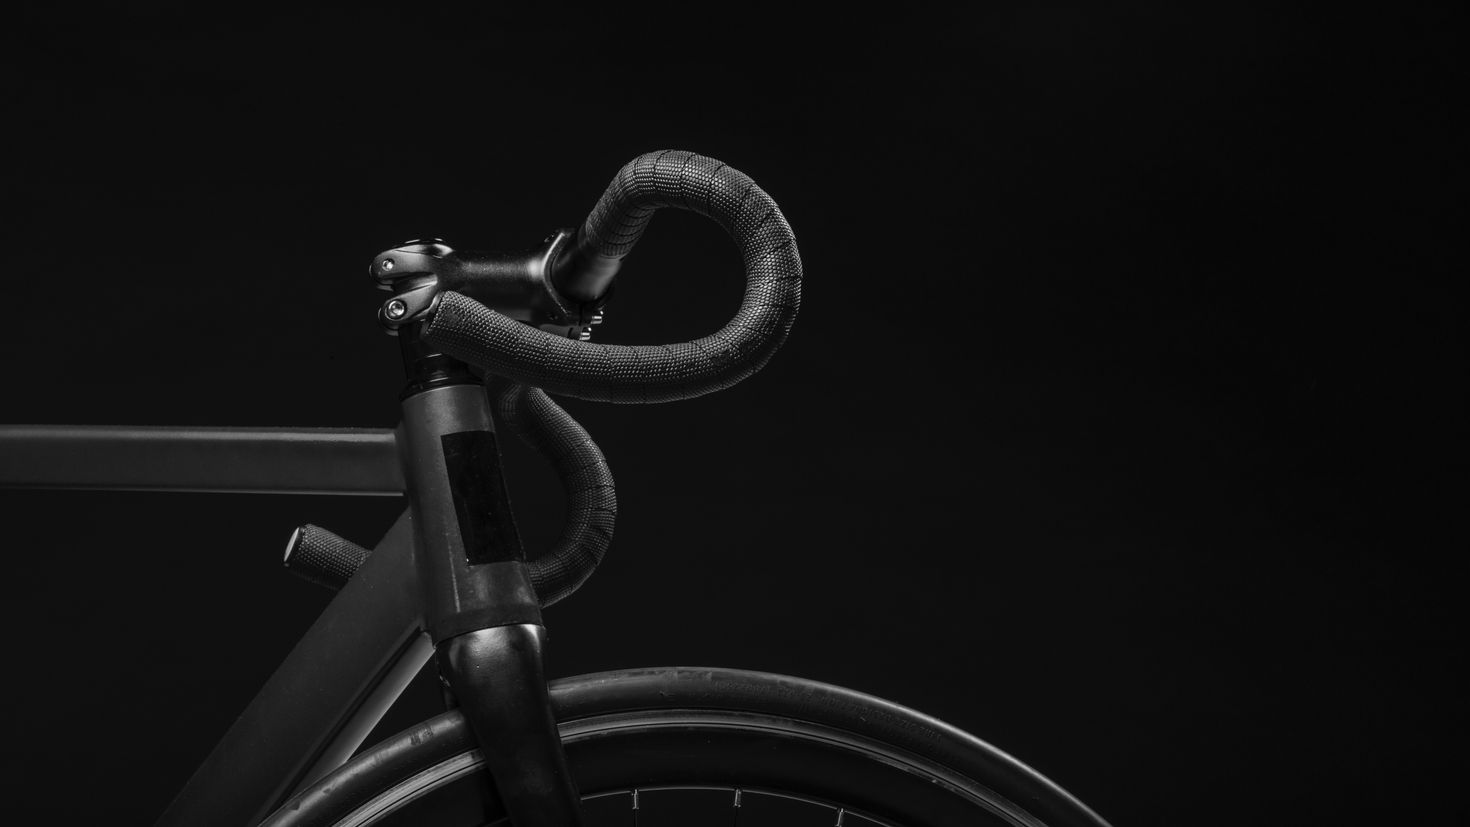 Велосипед на черном фоне